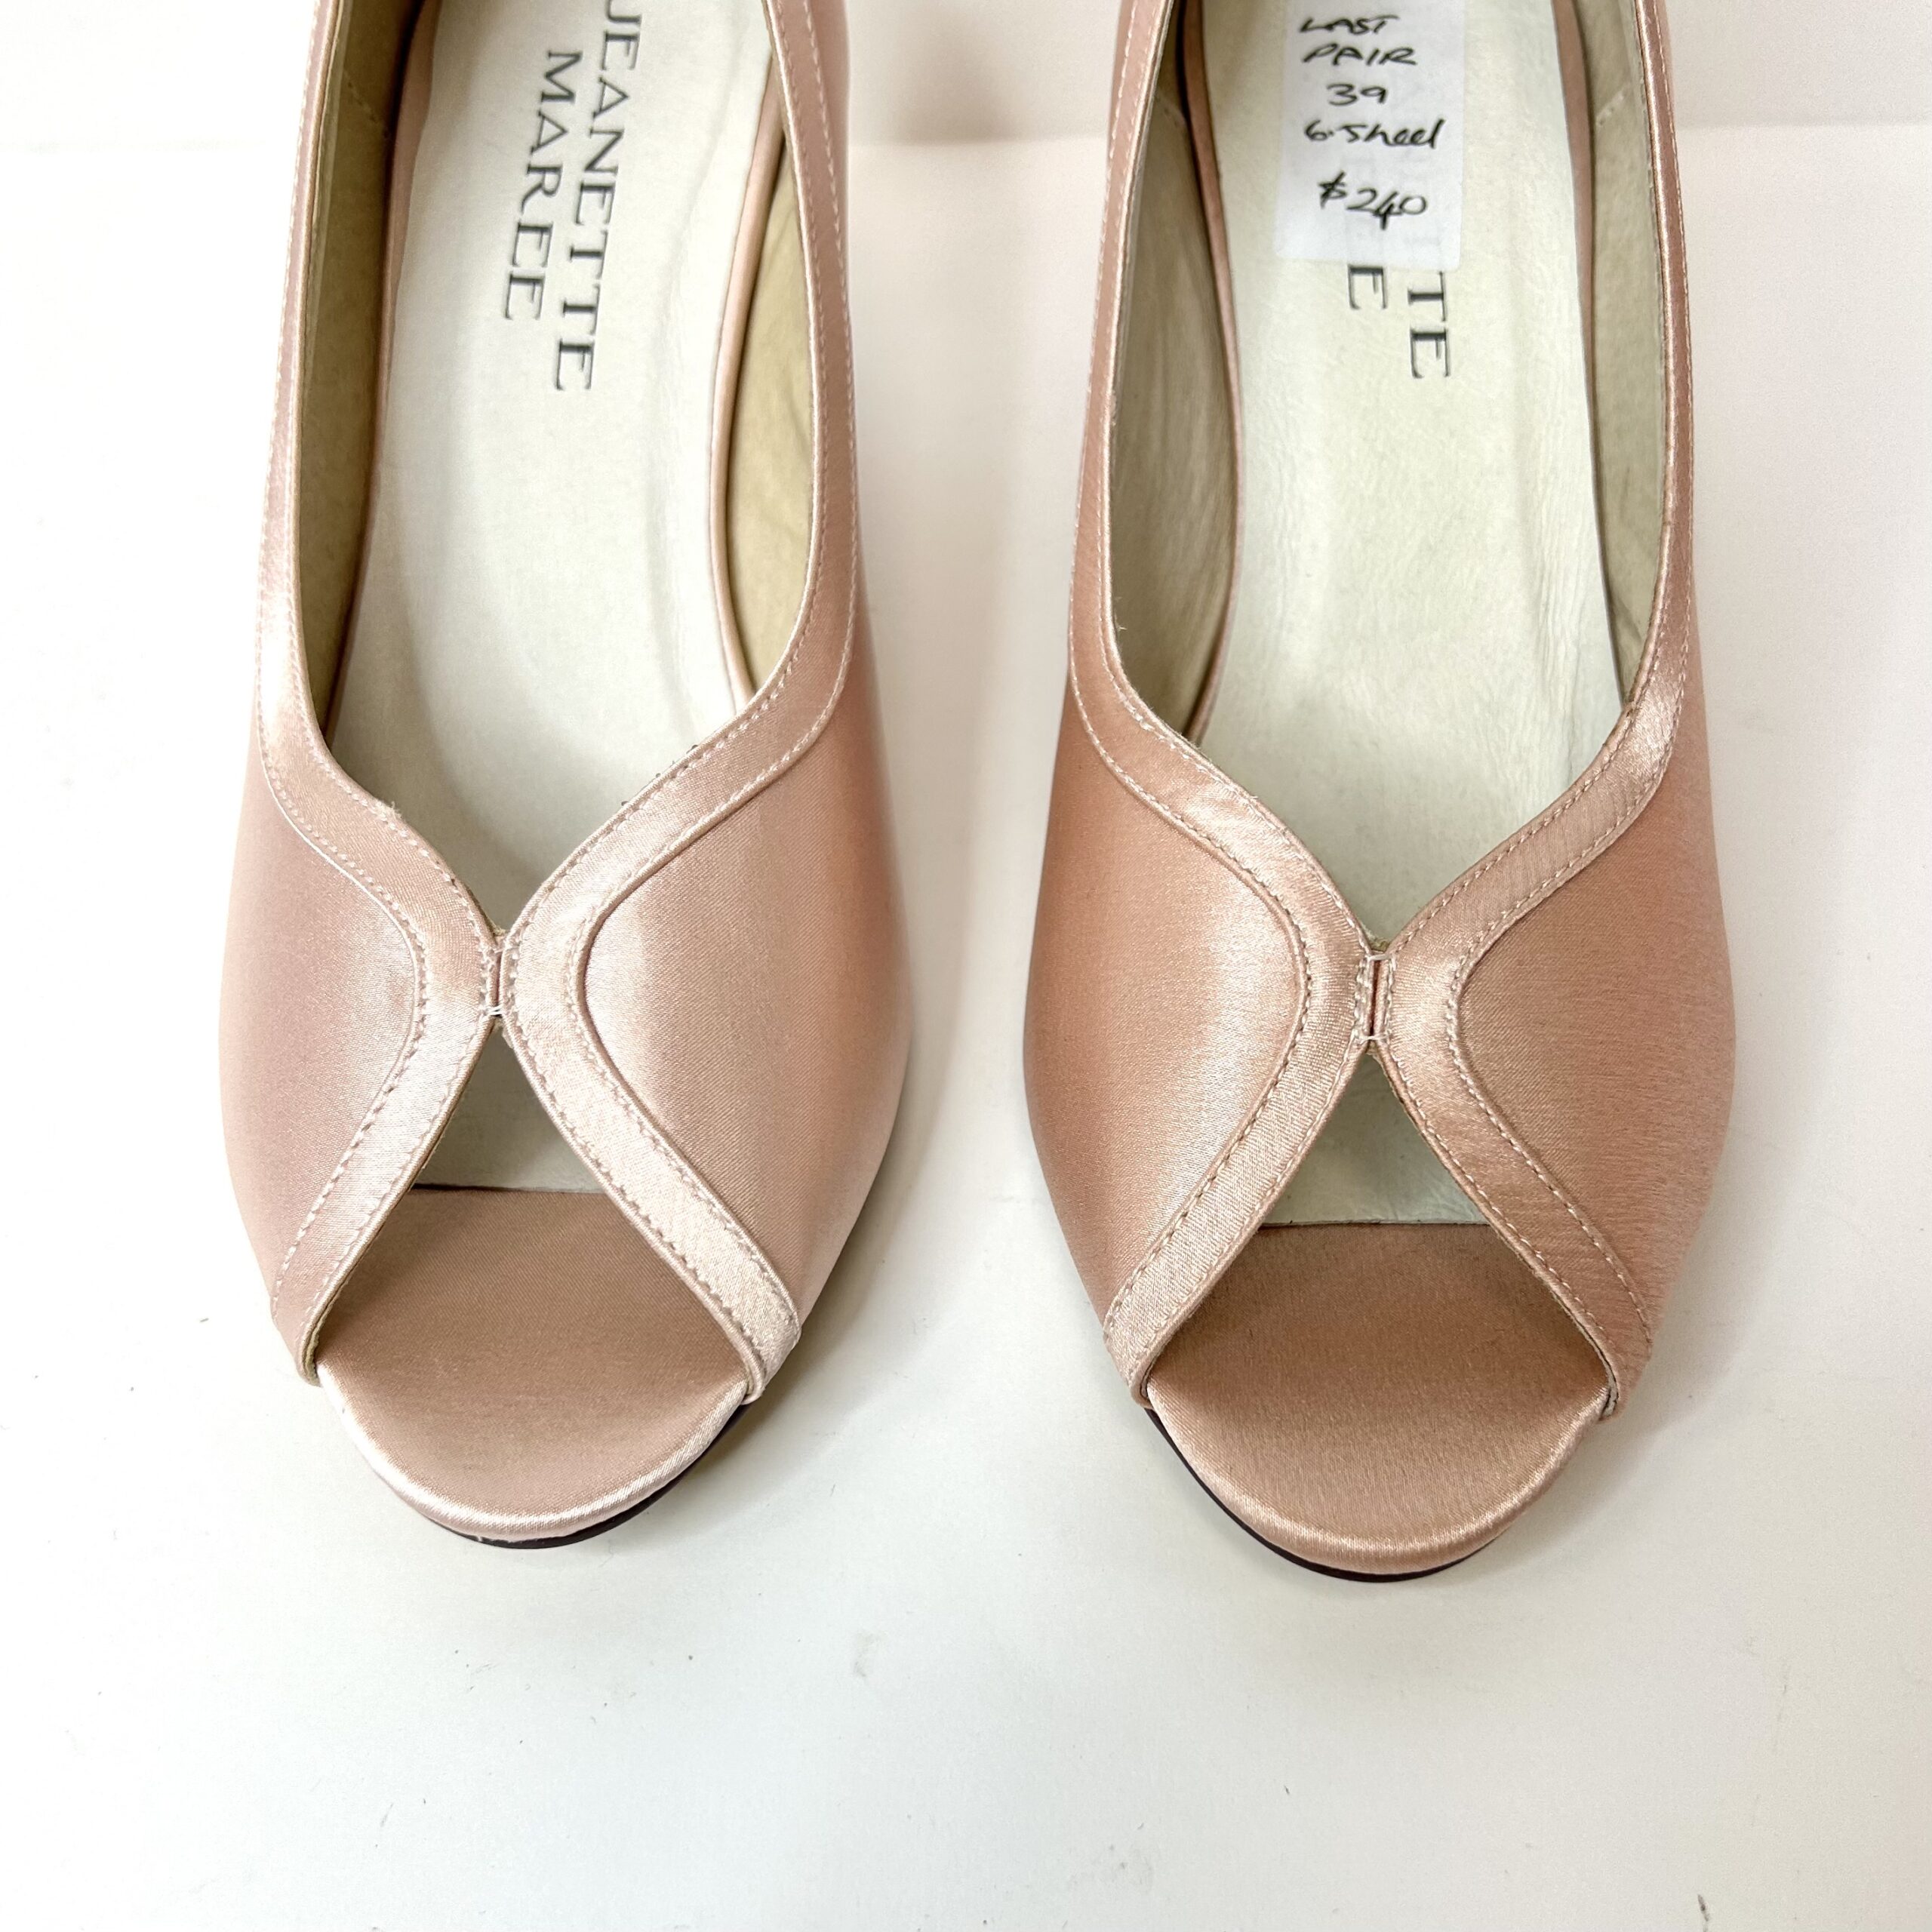 pink satin heels|sarah pink I Jeanette Maree|Shop Now Online